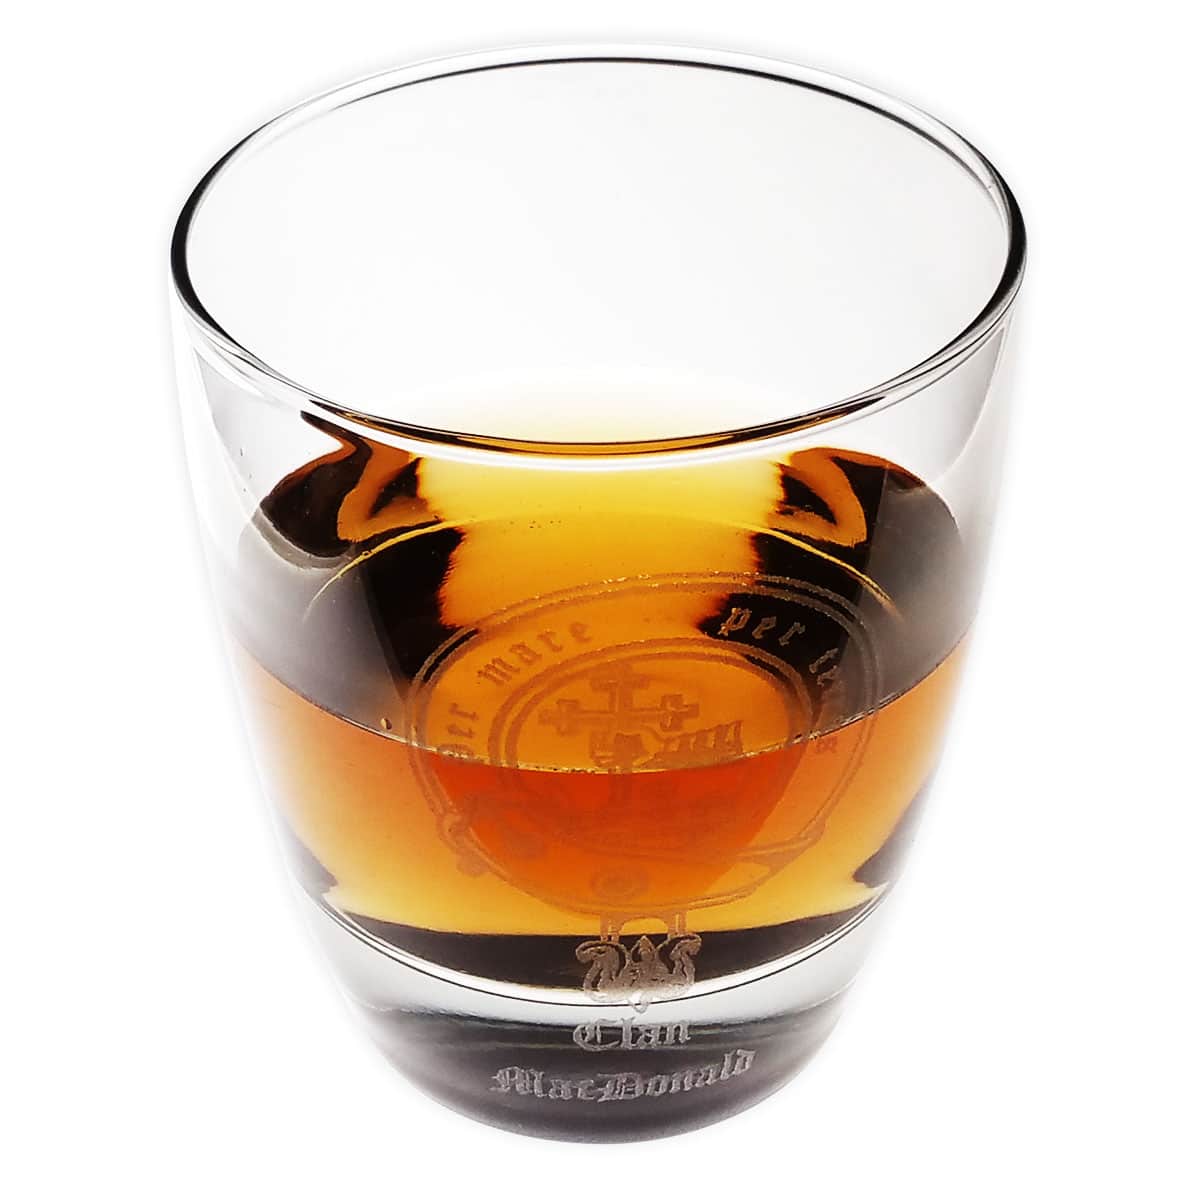 Art Pewter Ogilvie Clan Crest Whisky Glass Tumbler WG-C91 